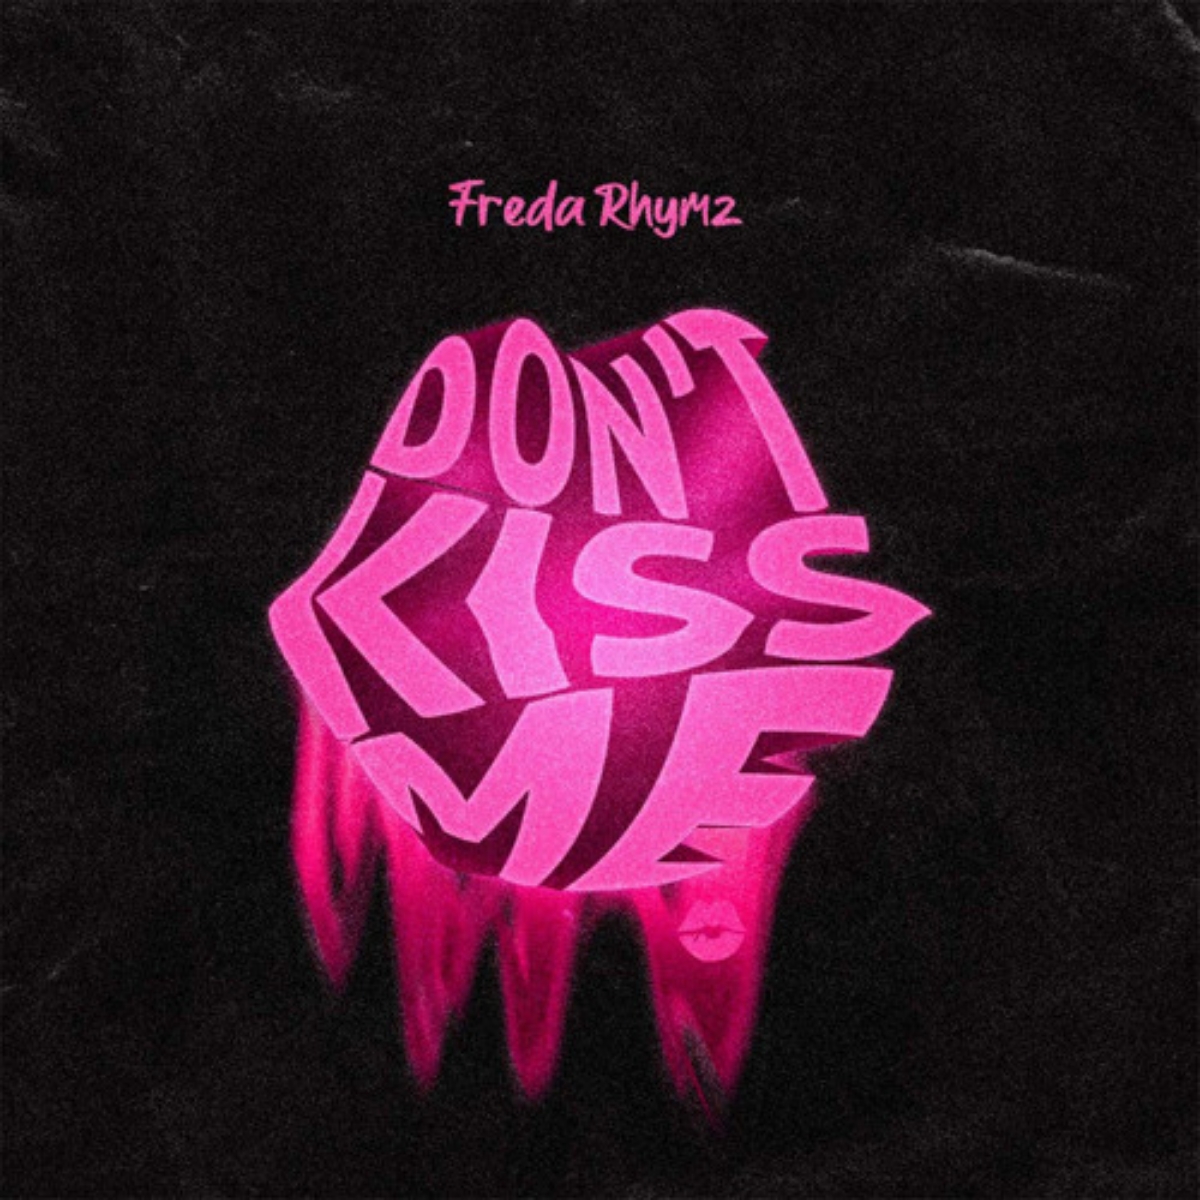 Freda Rhymz - Don't Kiss Me (DKM)